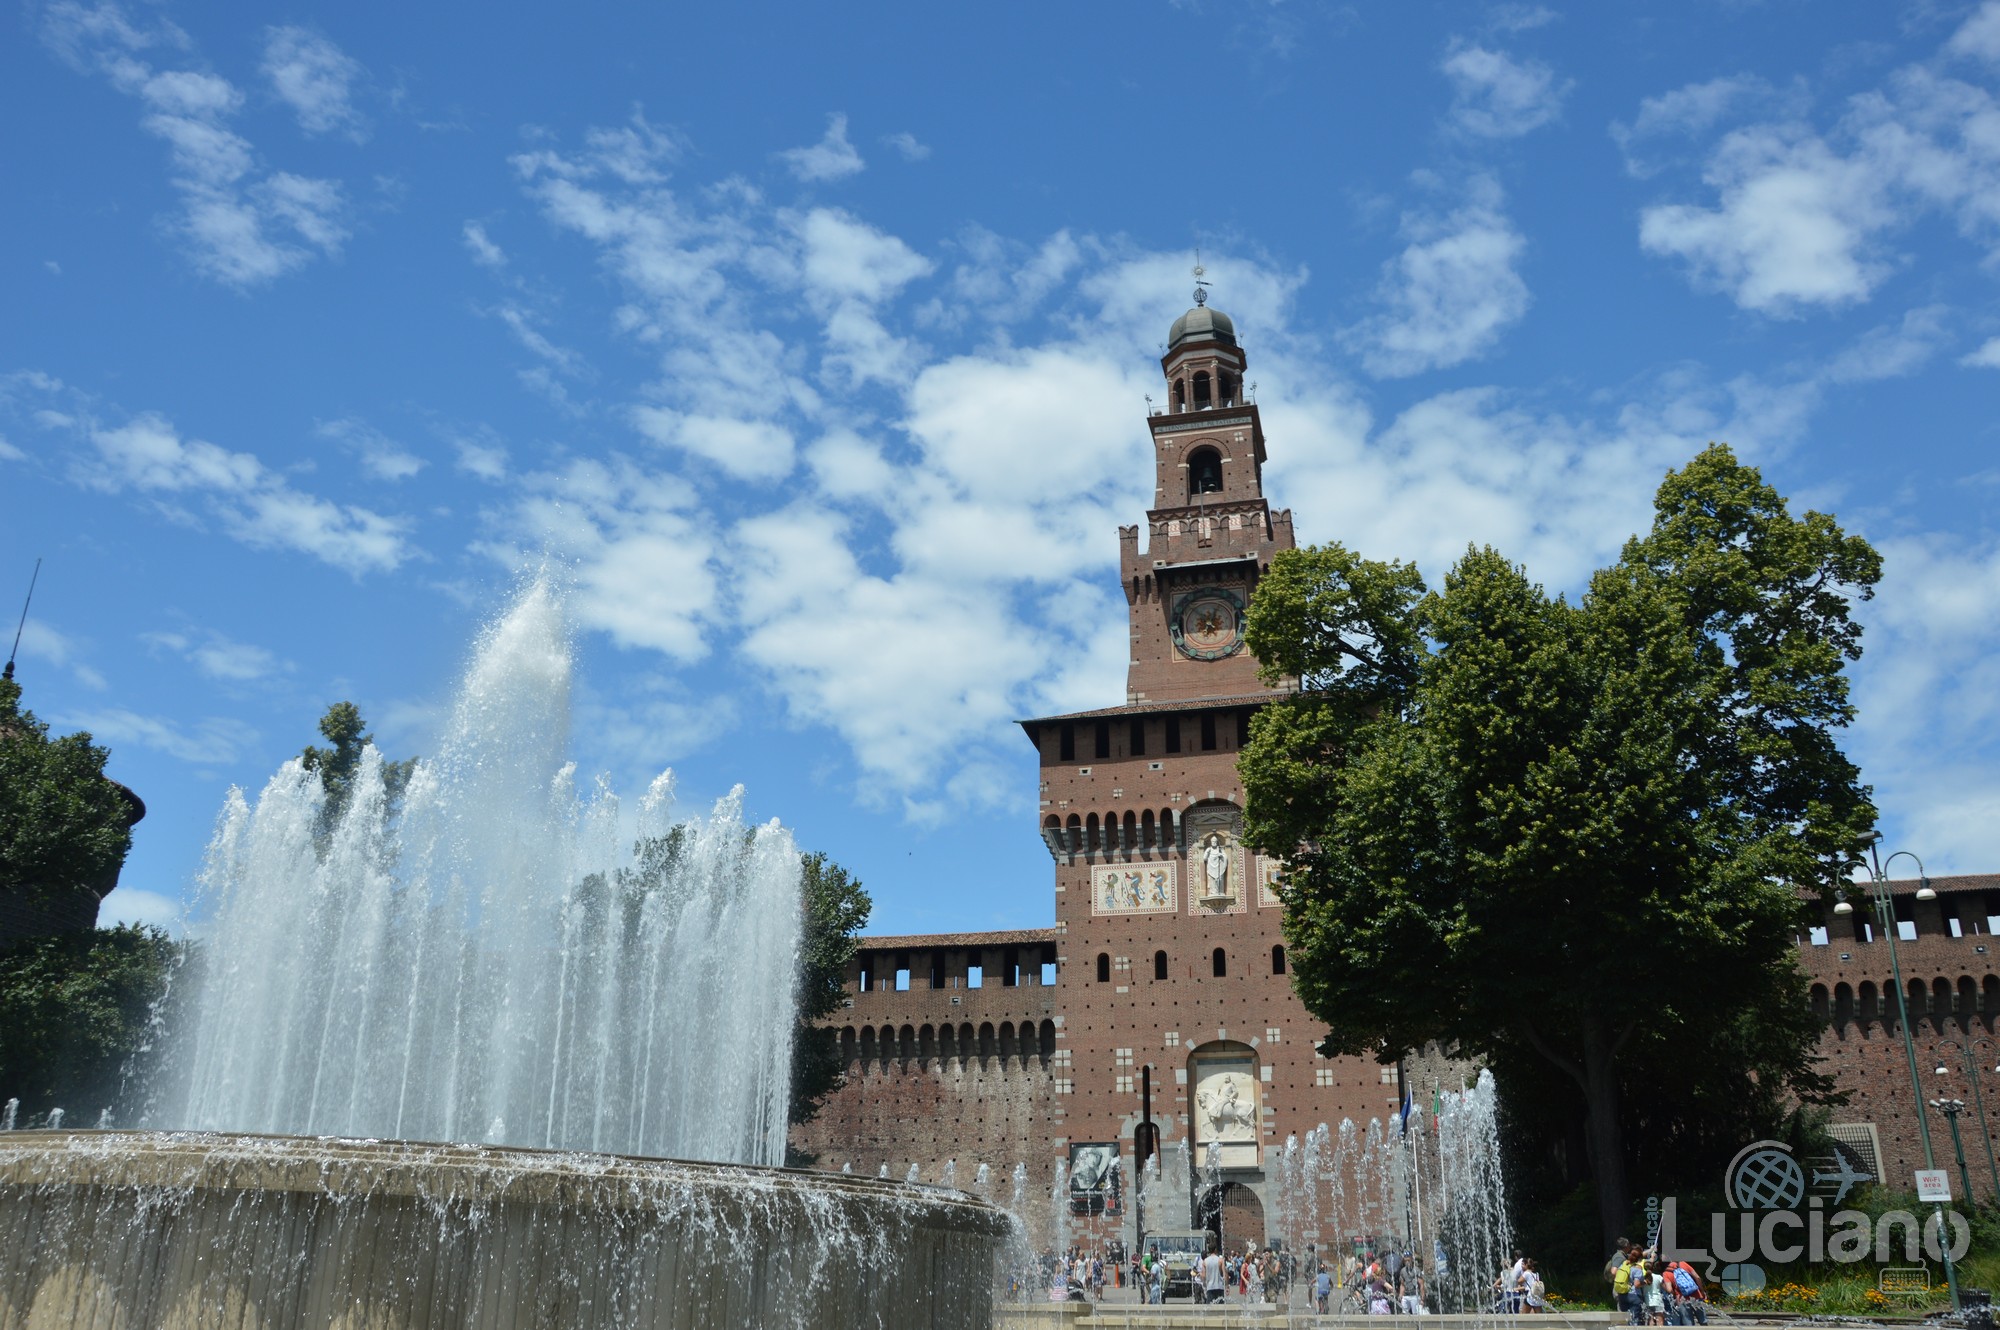 Castello Sforzesco - Milano - Lombardia - Italia